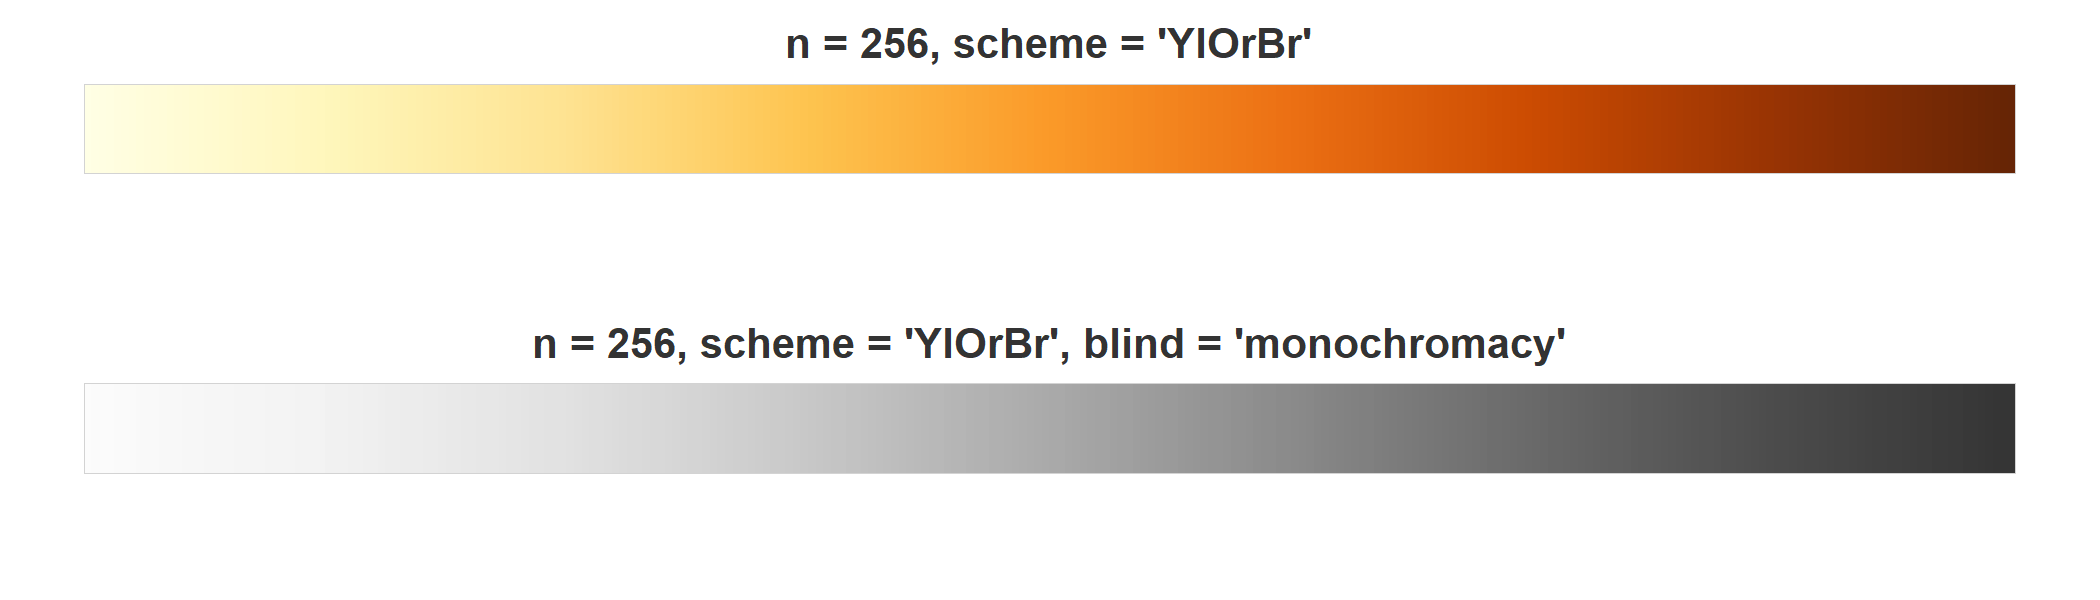 Prepare YlOrBr scheme for gray-scale conversion.